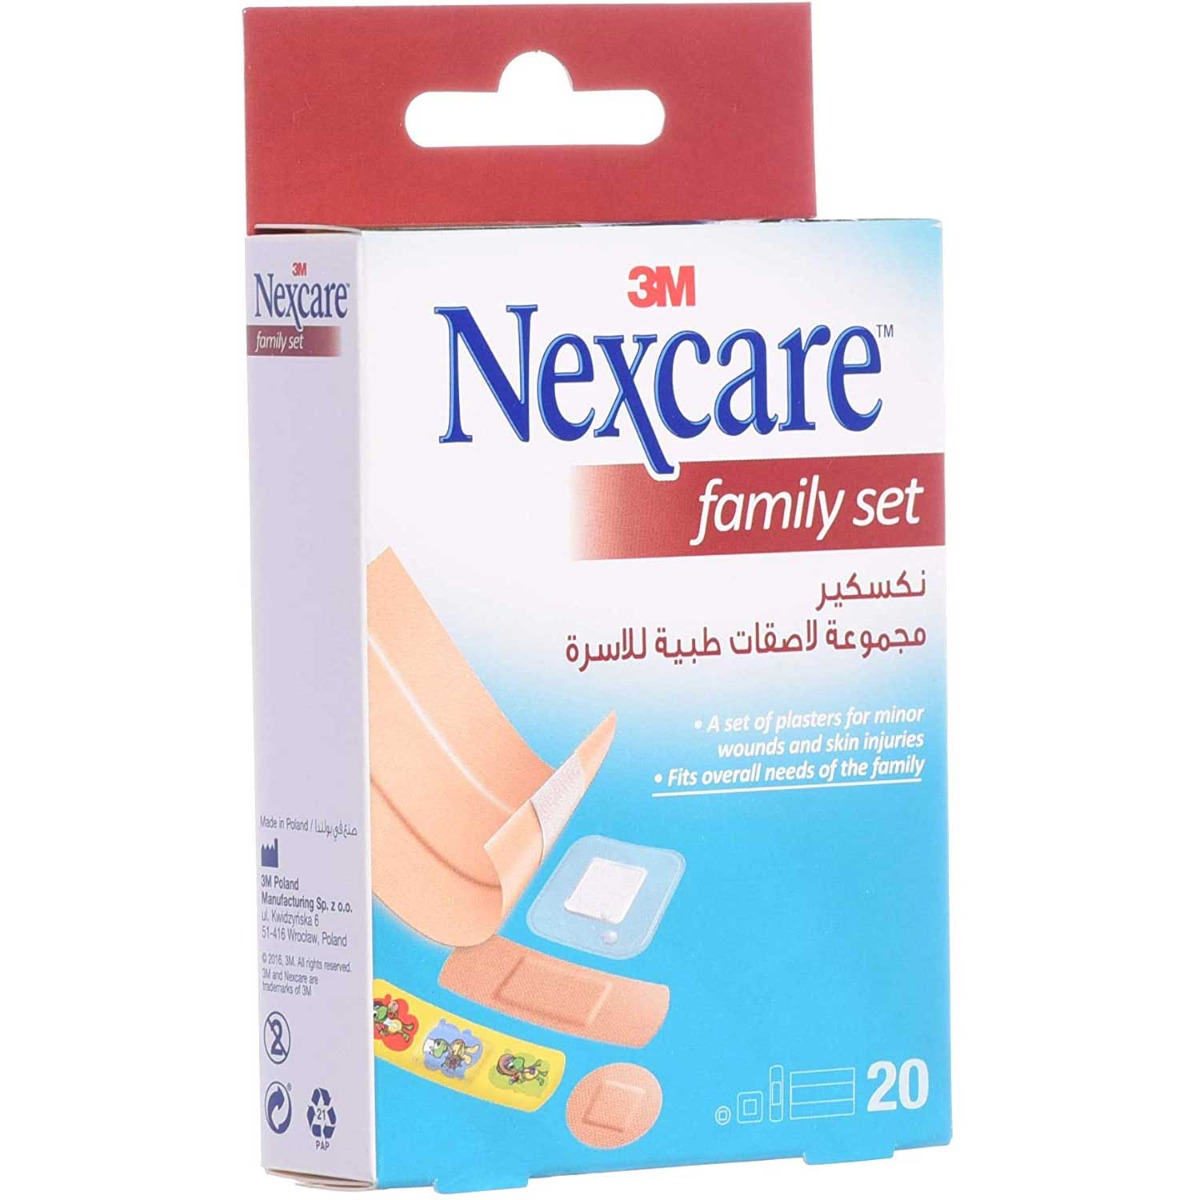 Back Image for 3M Nexcare Family Set Adhesive Bandage 20's